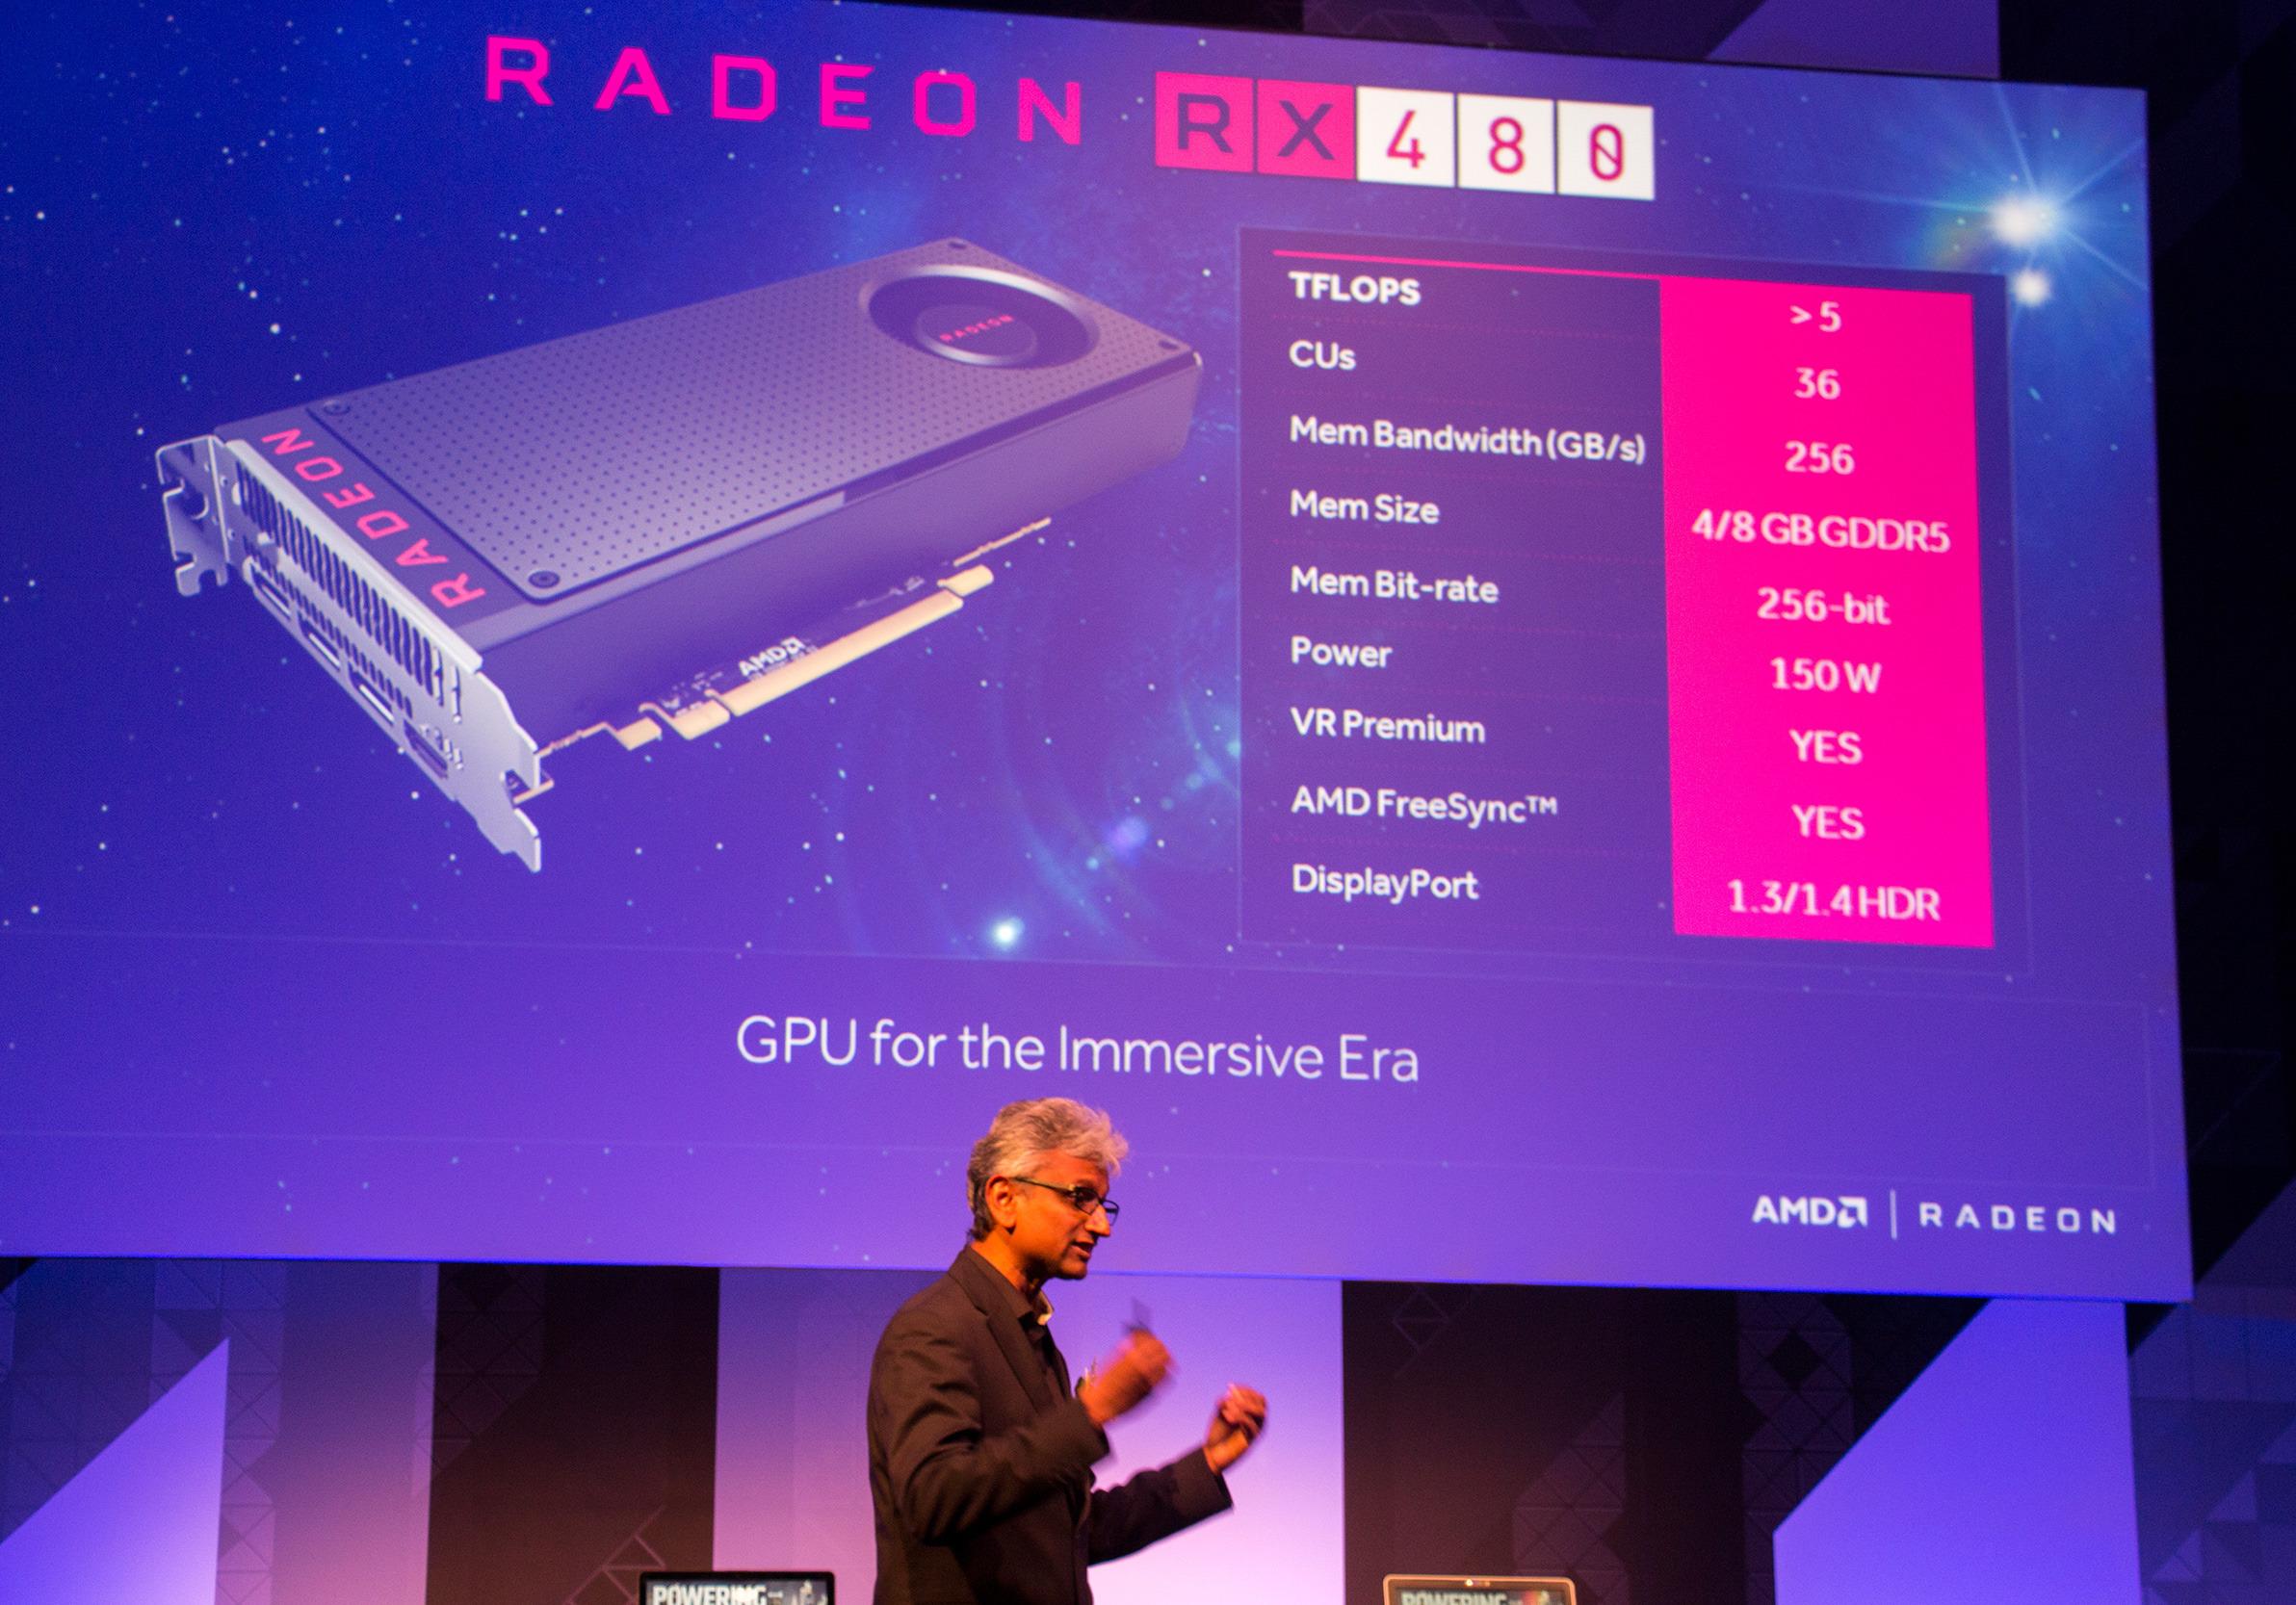 Det er mye vi ikke vet om AMDs RX 480, ennå, men noen spesifikasjoner har vi.